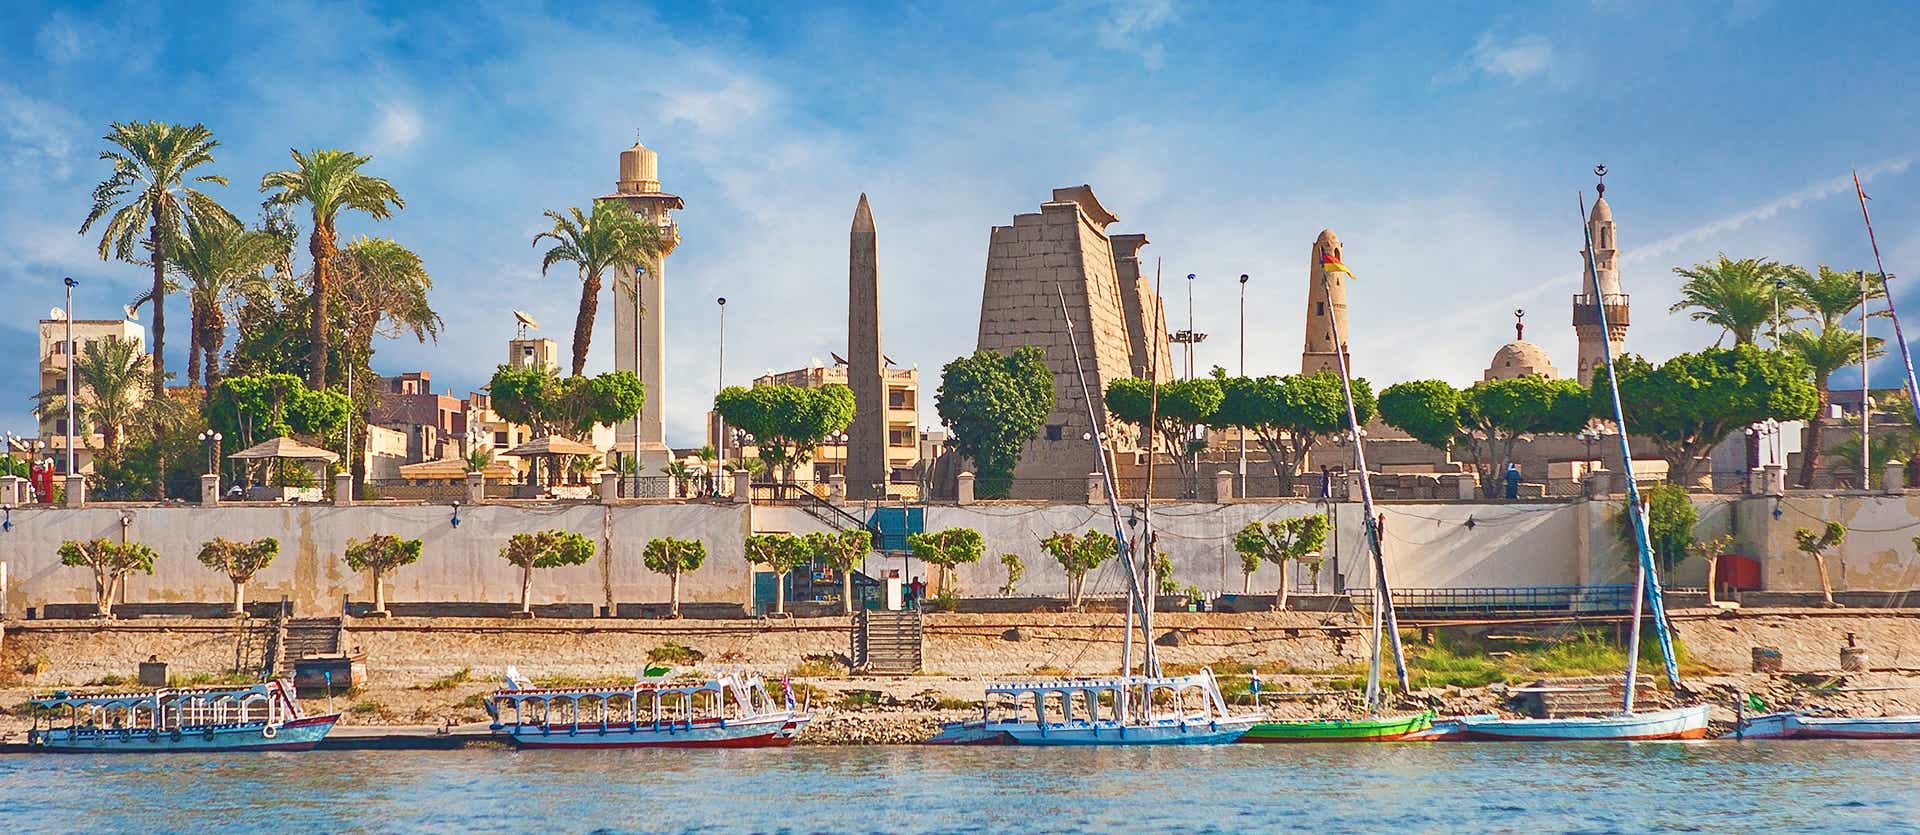 River Nile <span class="iconos separador"></span> Luxor